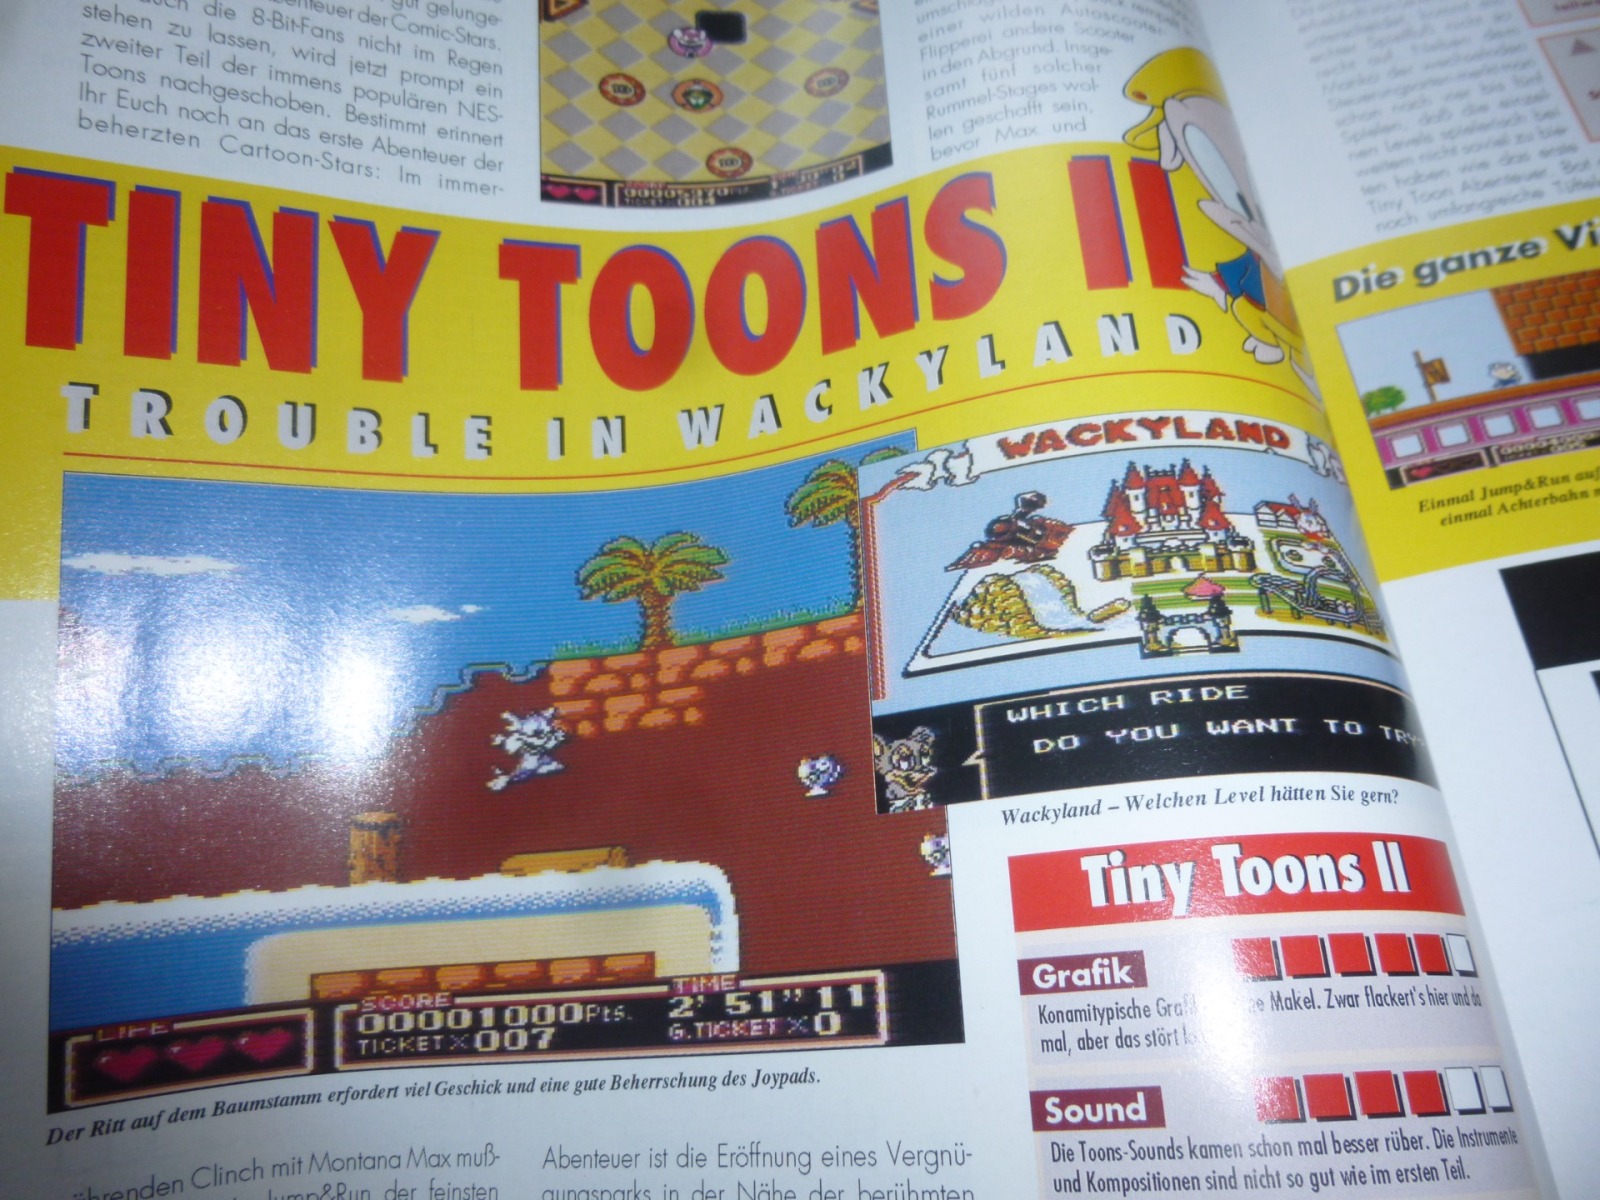 TOTAL Das unabhängige Magazin - 100% Nintendo - Ausgabe 9/93 1993 15